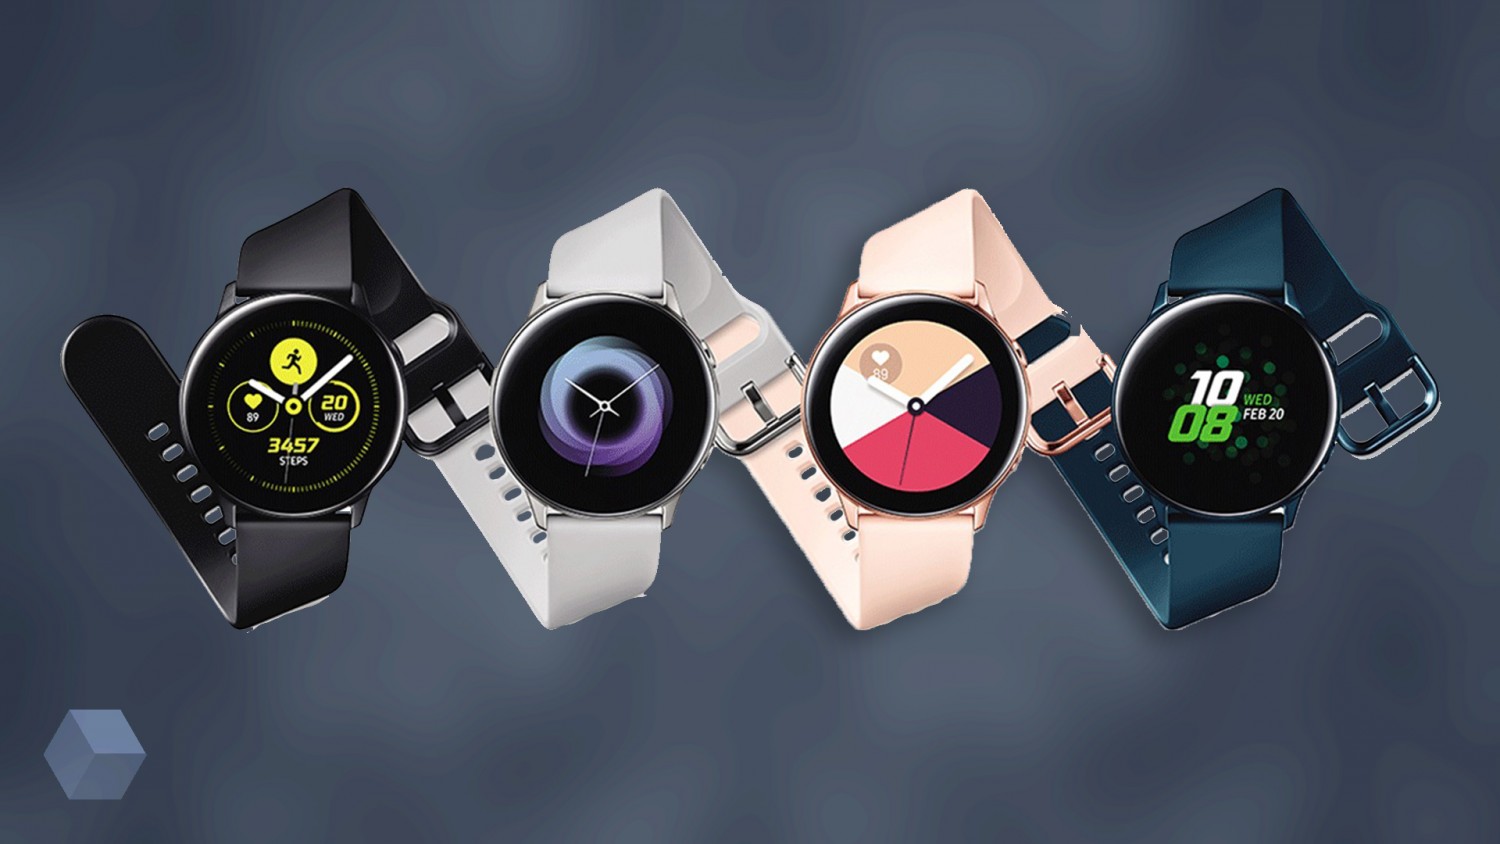 Samsung Galaxy Watch Active: умные часы для занятий спортом